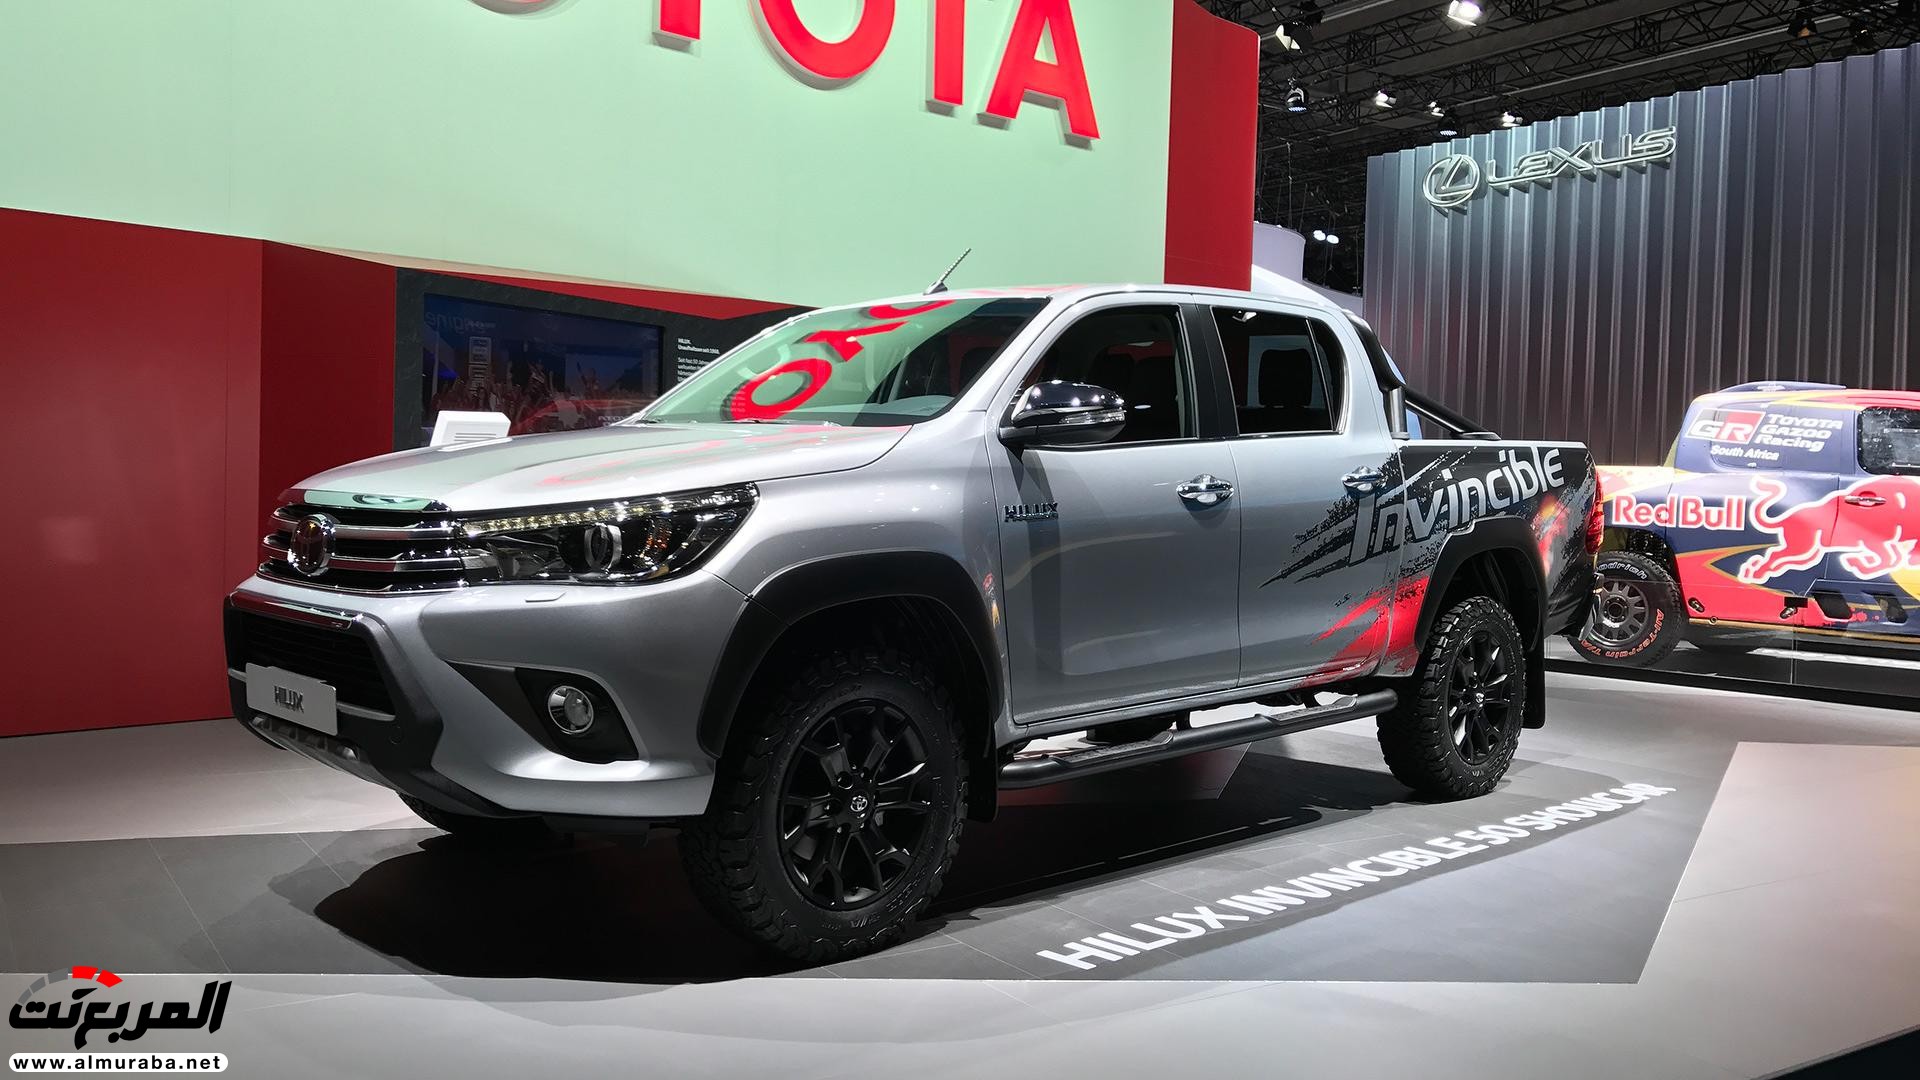 تويوتا هايلكس 2018 الاصدار الخاص بمناسبة مرور 50 عام "تقرير وصور" Toyota Hilux 50